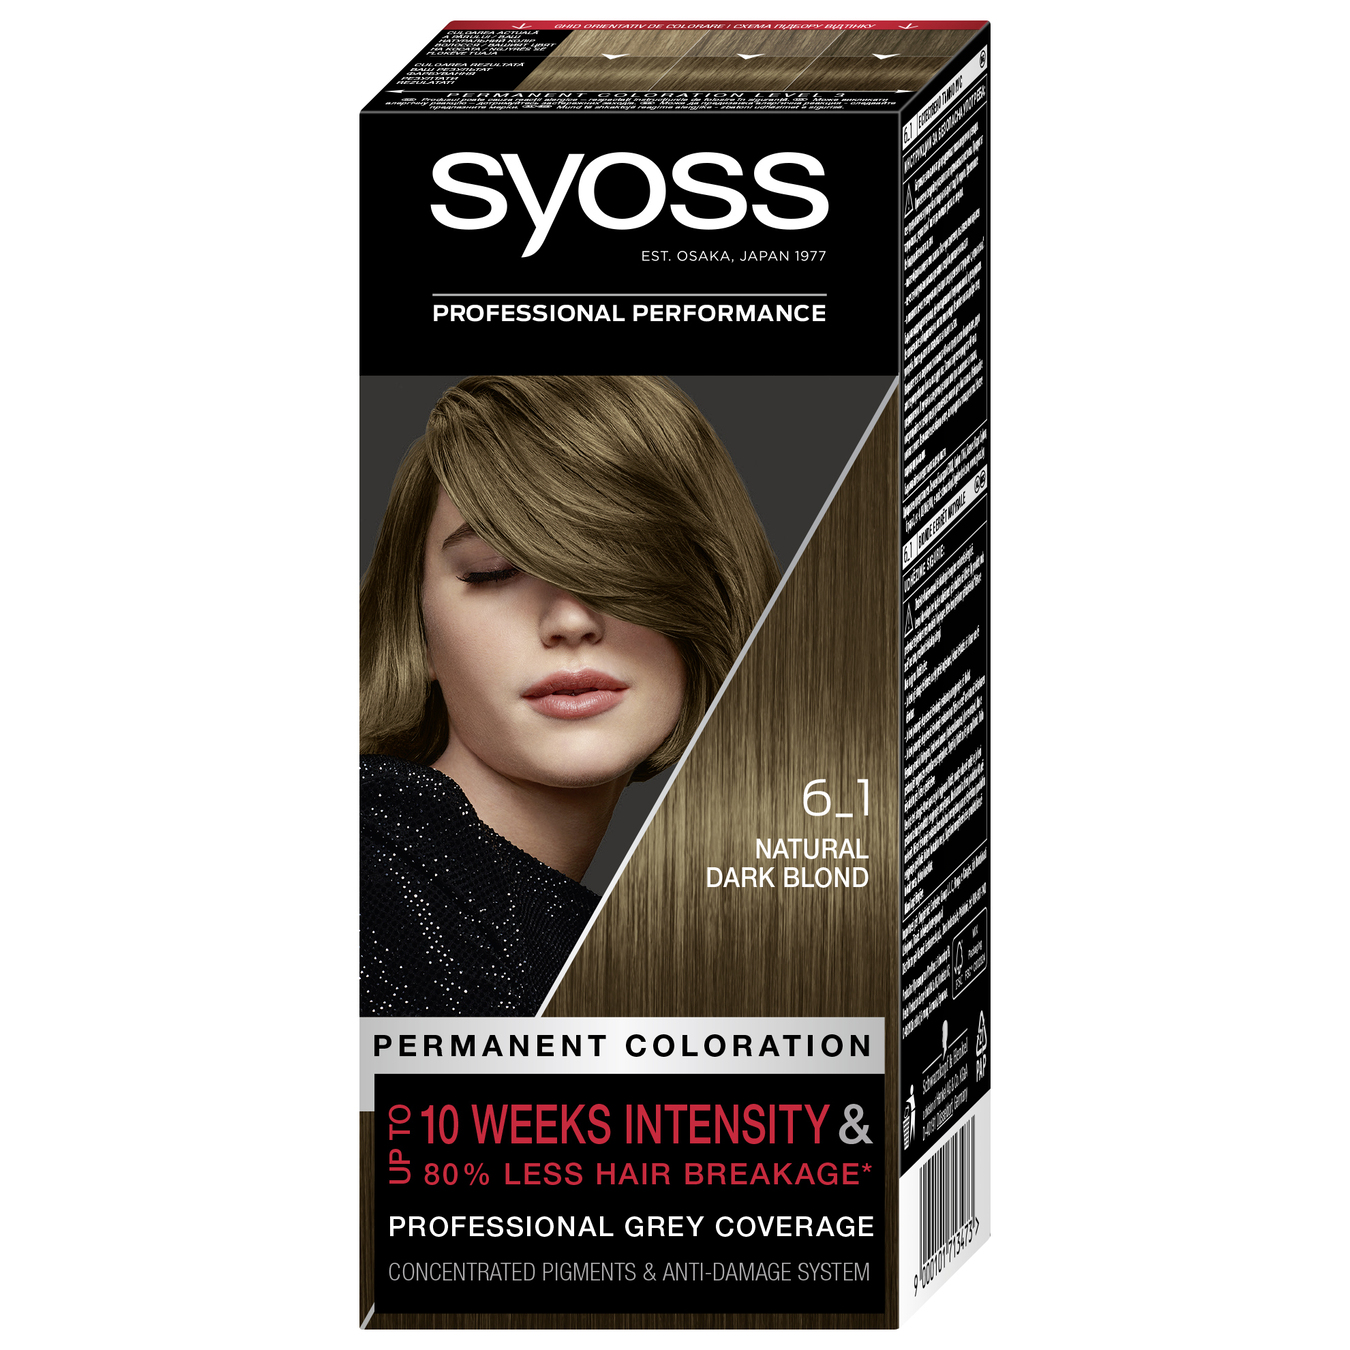 Фабра для волосся Syoss 6-1 насичений темно-русявий